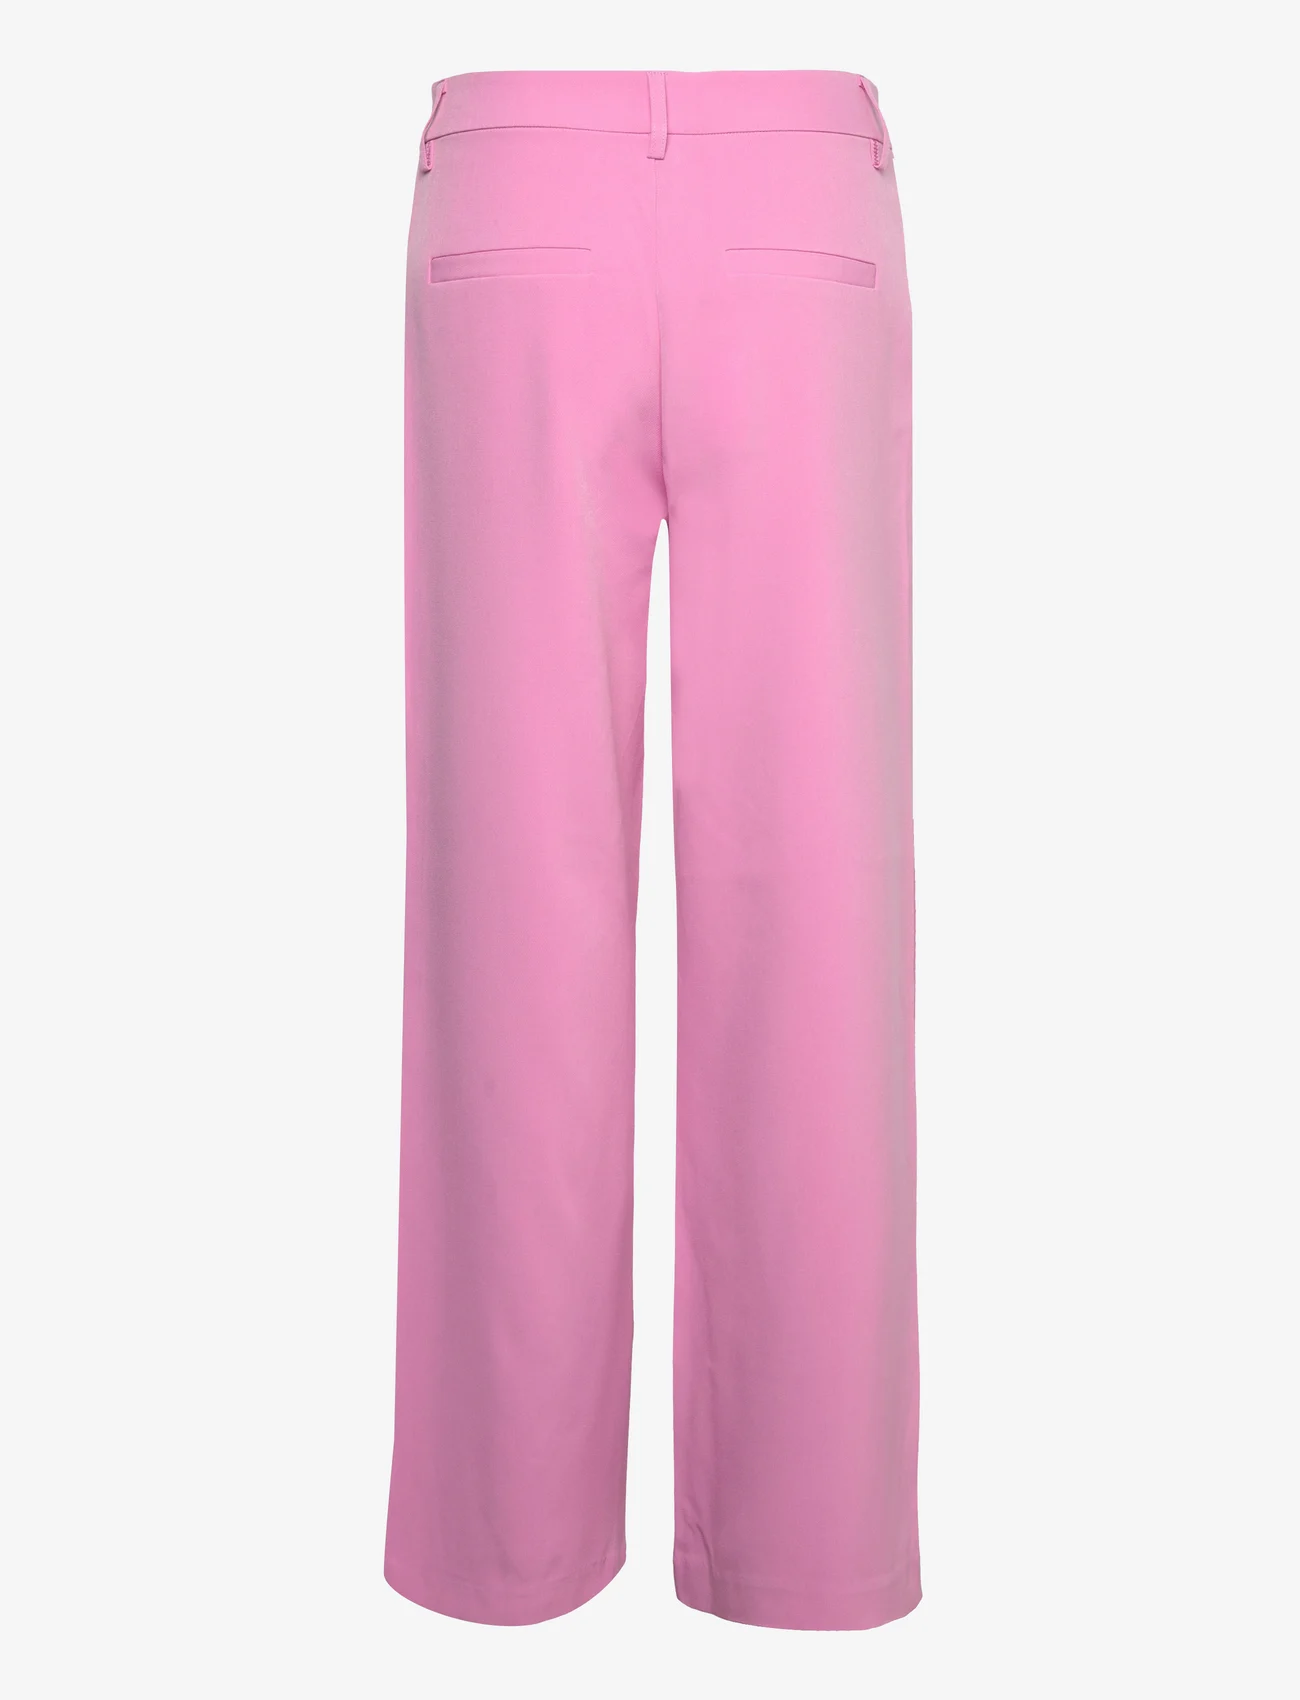 Culture - Cucenette Wide Pants - odzież imprezowa w cenach outletowych - fuchsia pink - 1